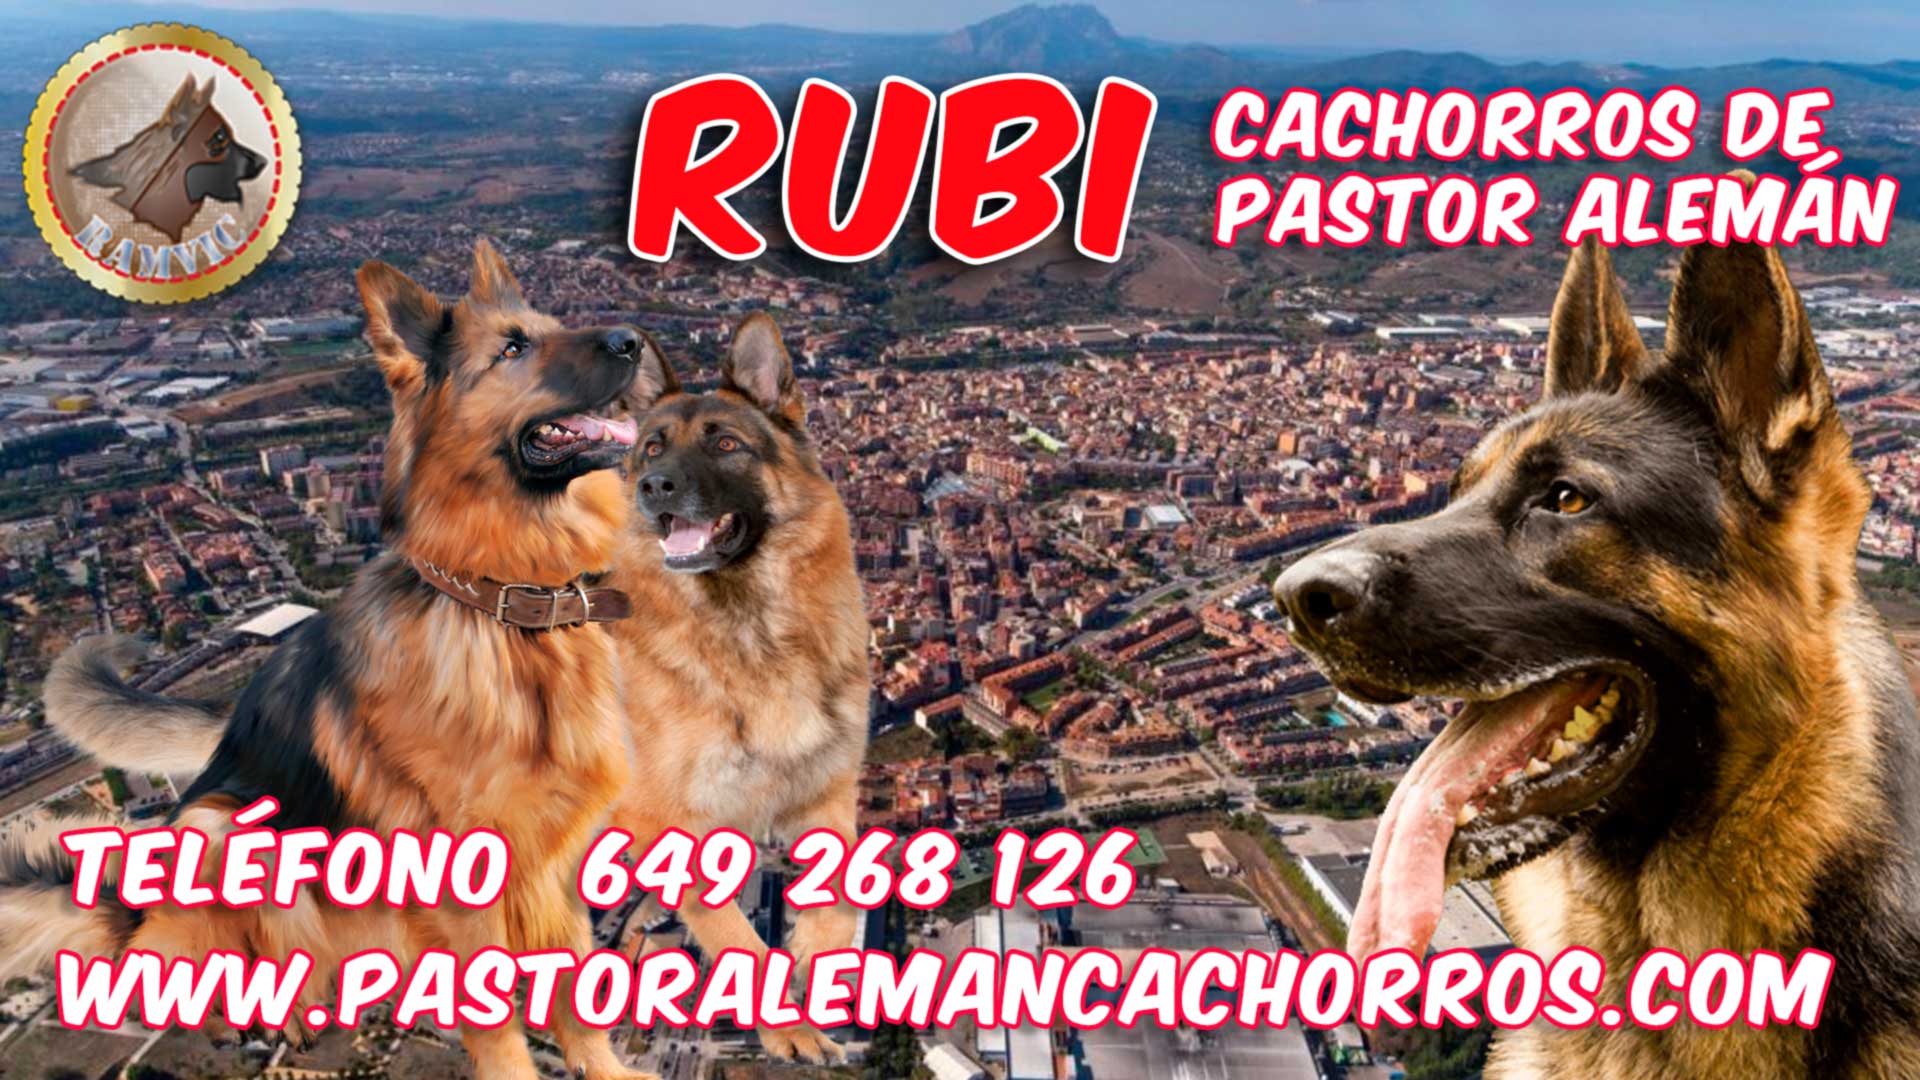 Cachorros de pastor alemán en Rubi